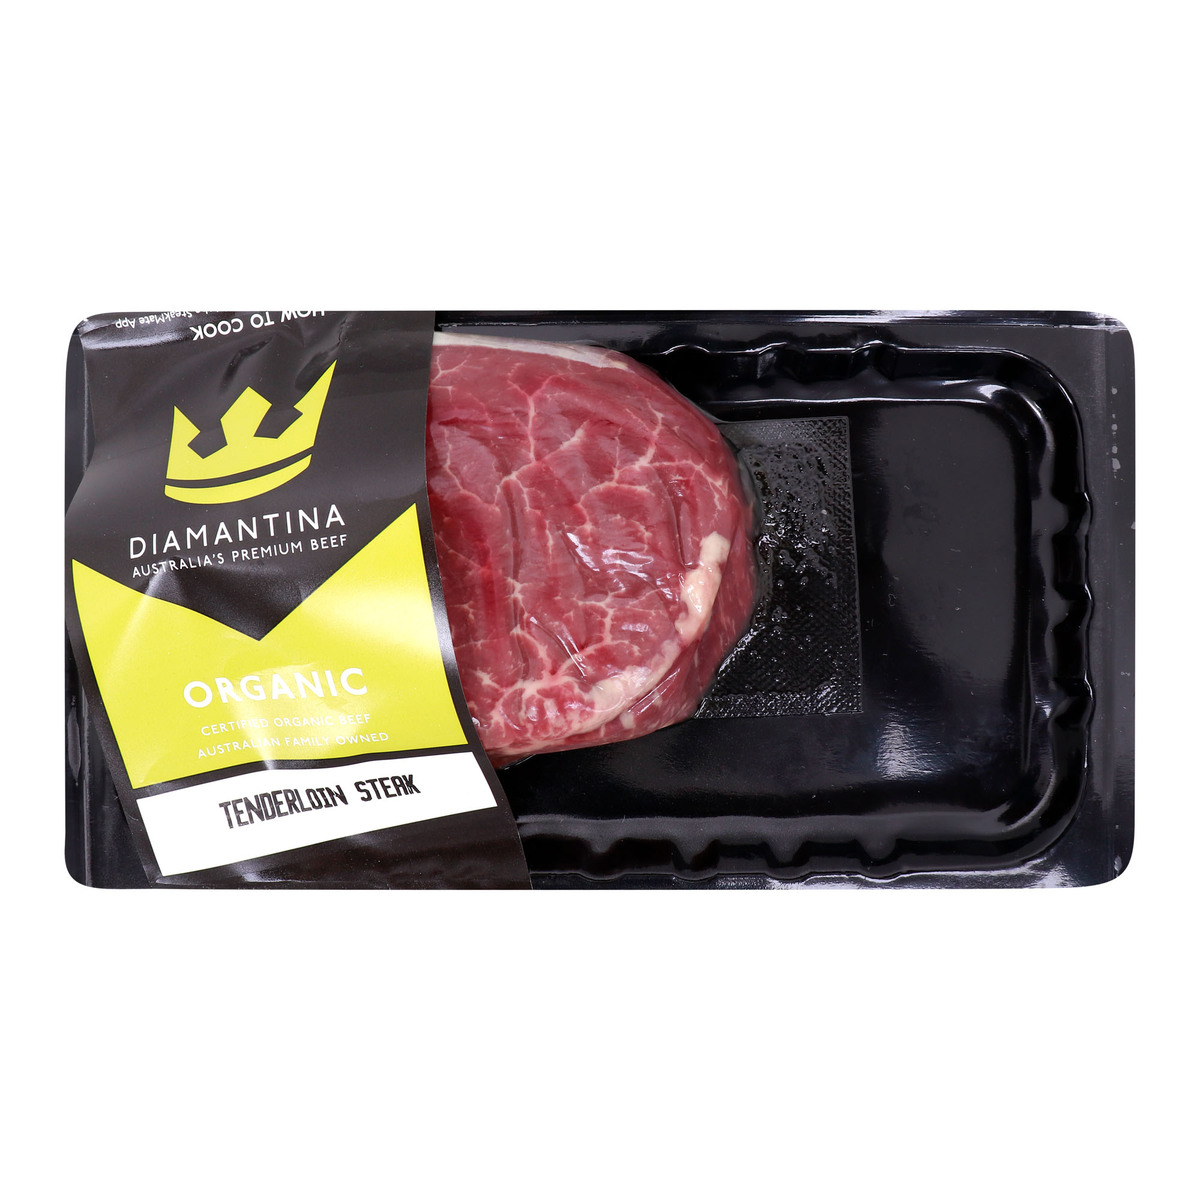 Buy Diamantina Organic Tenderloin Steak 200 g Online at Best Price | Value Added (Meat) | Lulu UAE in UAE